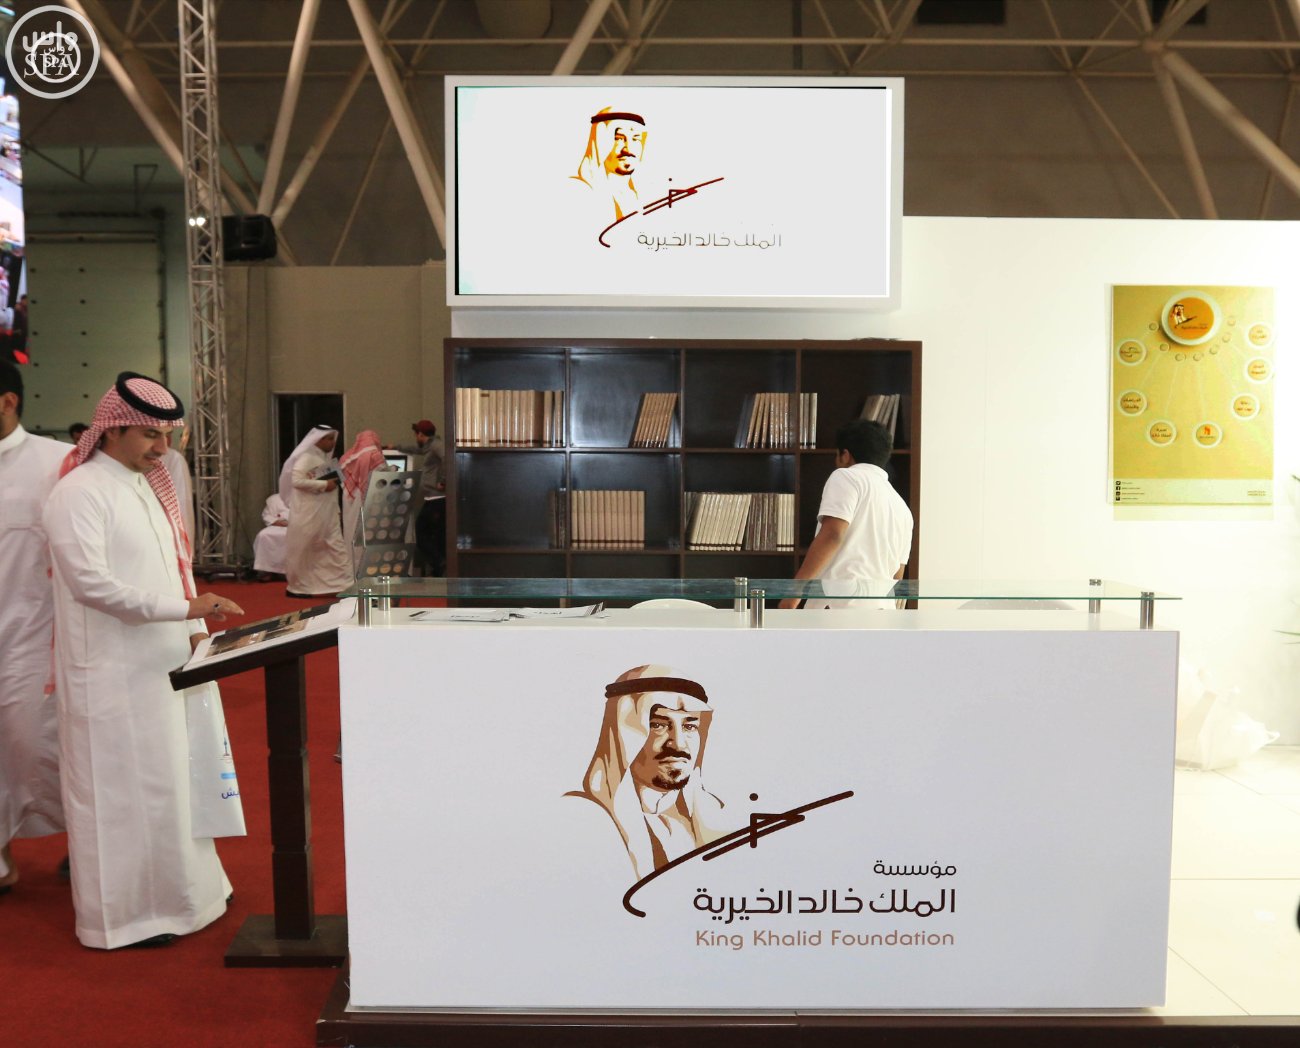 33 إصداراً علمياً بمؤسسة الملك خالد الخيرية بمعرض الكتاب في الرياض